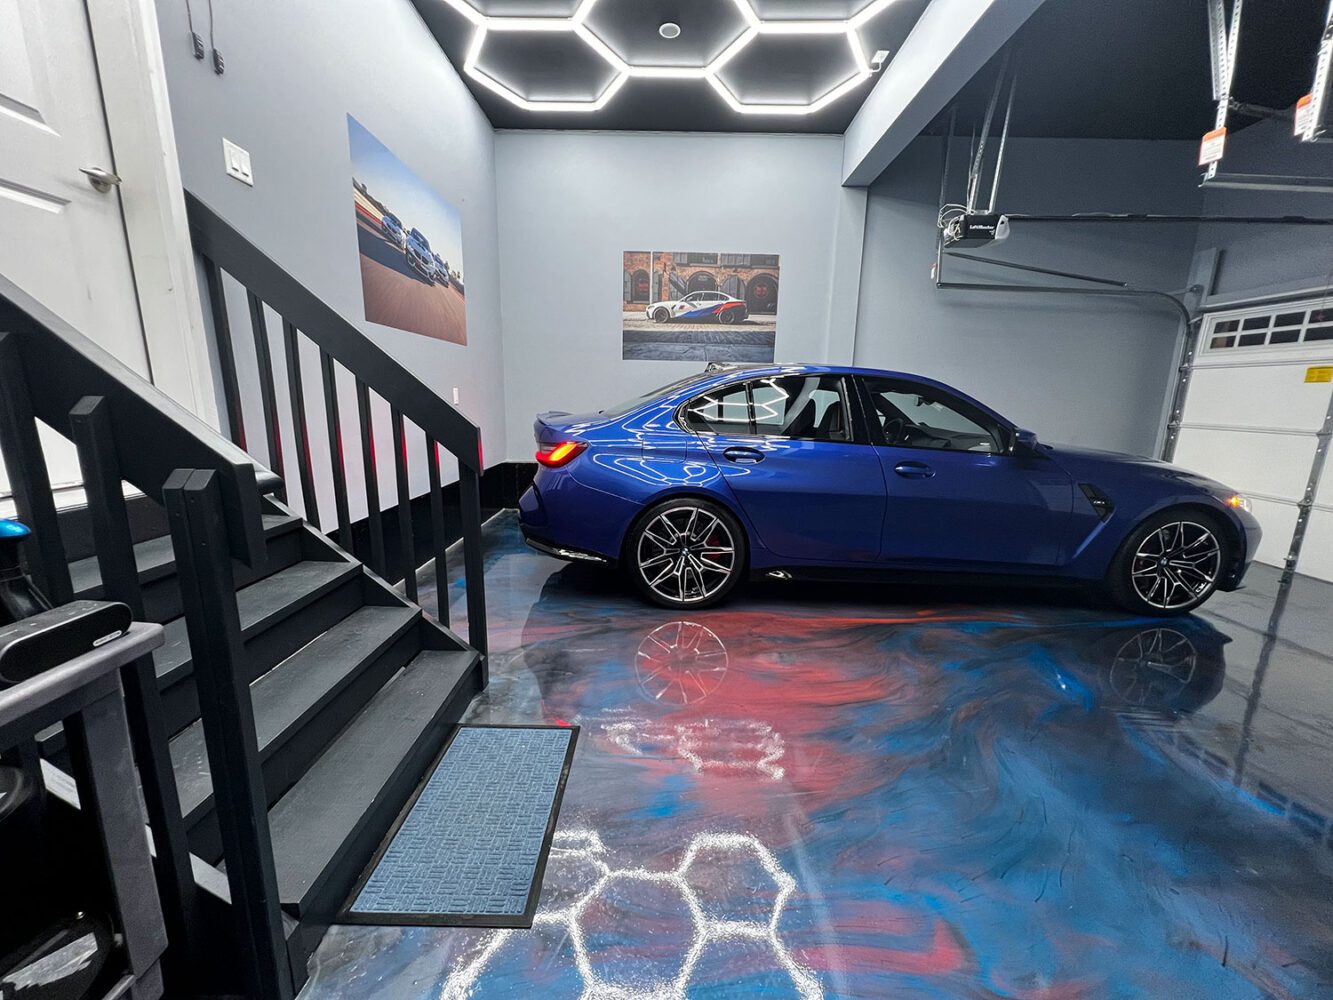 Dream BMW garage